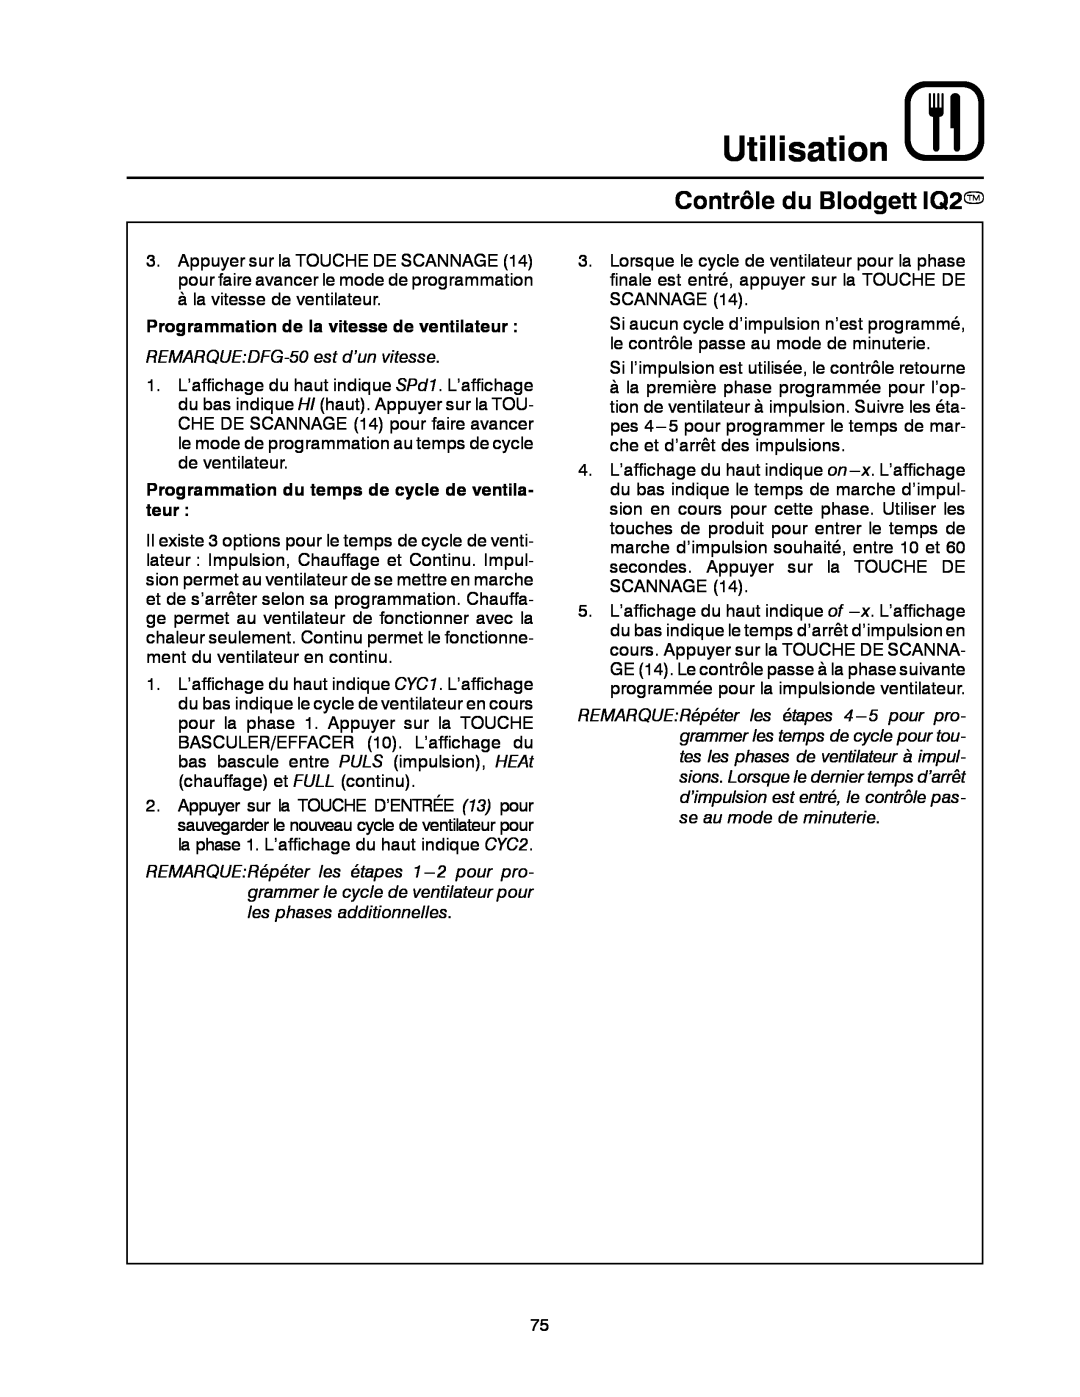 Blodgett DFG-50 manual Utilisation, Contrôle du Blodgett IQ2T, Programmation de la vitesse de ventilateur 